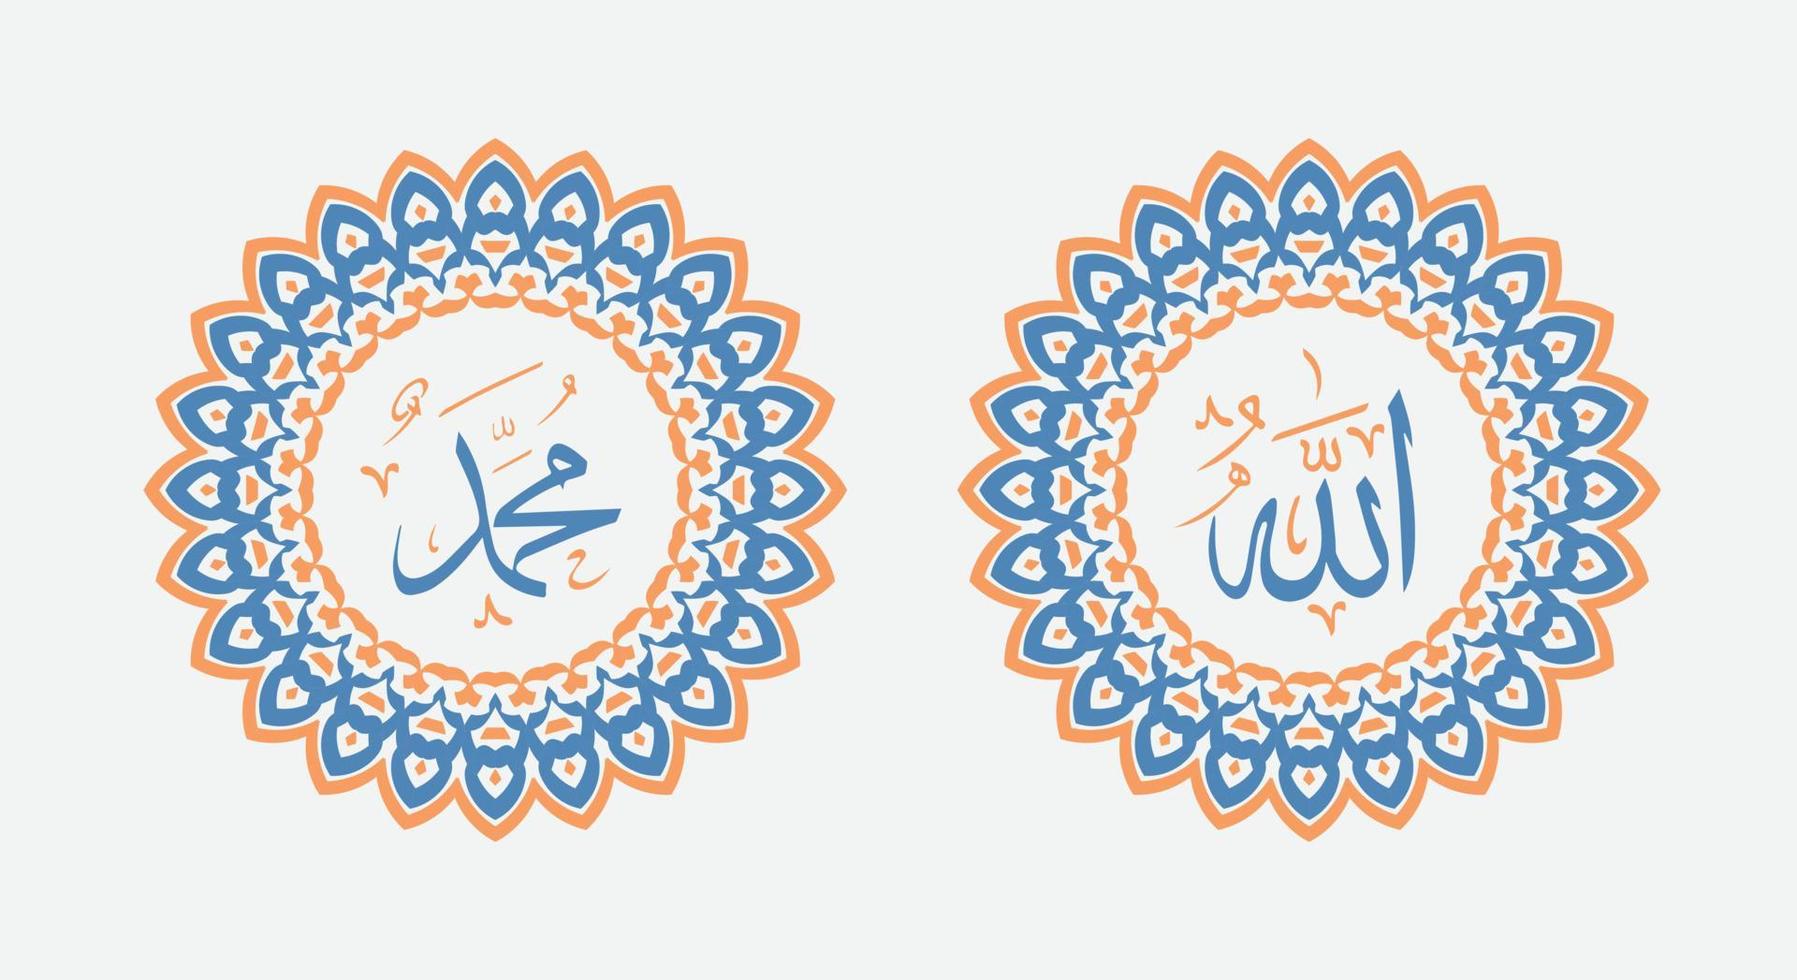 allah muhammad caligrafia árabe com moldura de círculo moderno vetor